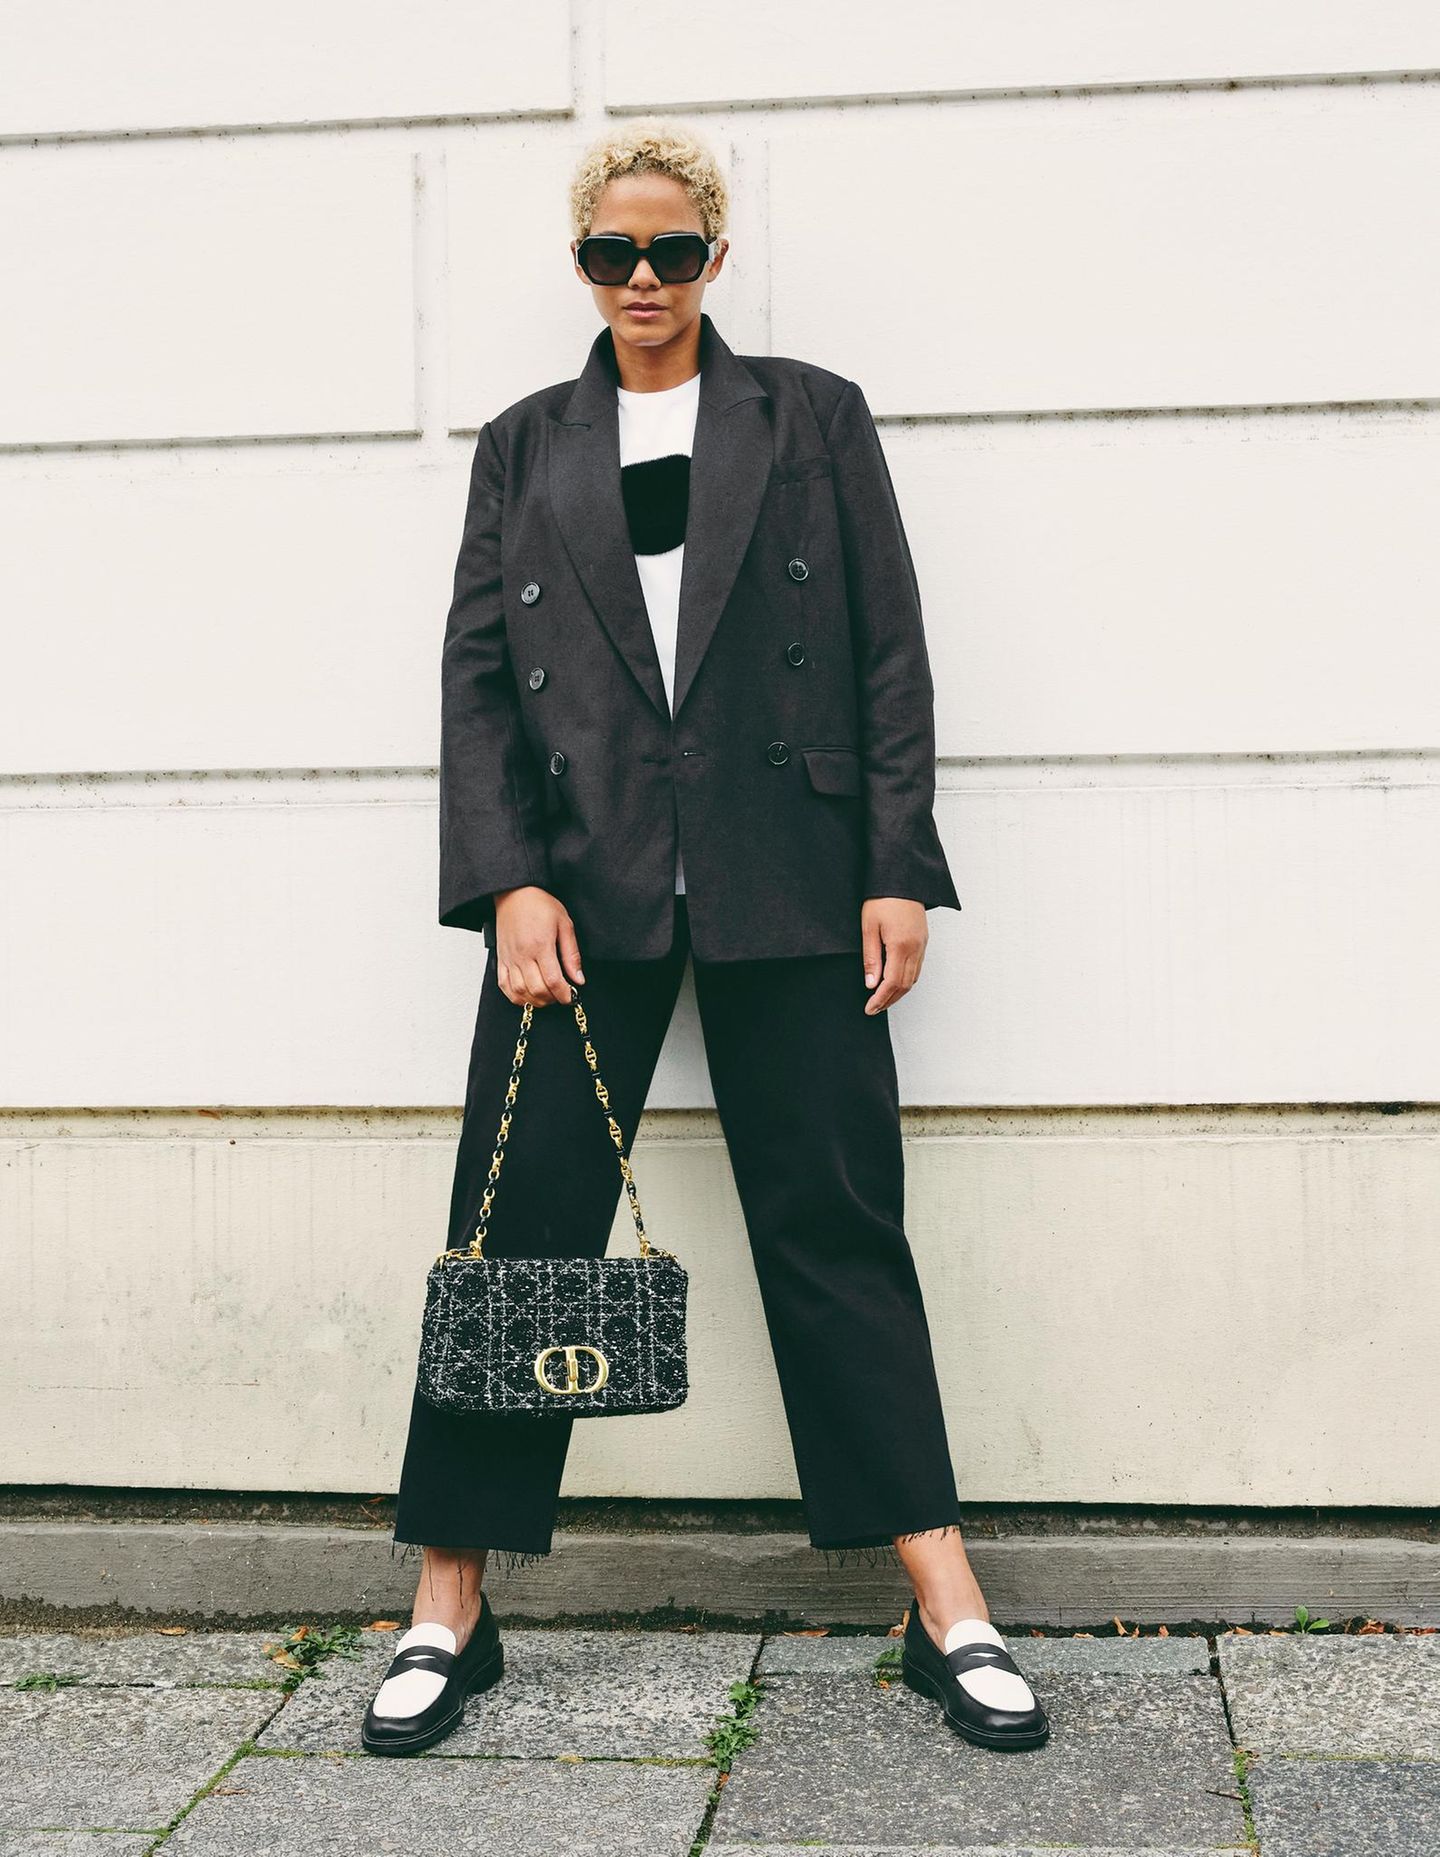 Für einen klassischen Business Casual Look ist der doppelreihige Blazer von &Other Stories mit der fransigen Jeans von Lovjoi perfekt geeignet. Um einen farblichen Kontrast zu setzen kombiniert das Model einen weißes T-Shirt mit schwarzem Plüsch-Punkt und stylische Loafer. Die Prada-Sonnenbrille sowie die Handtasche von Christian Dior machen den eleganten Look komplett. 